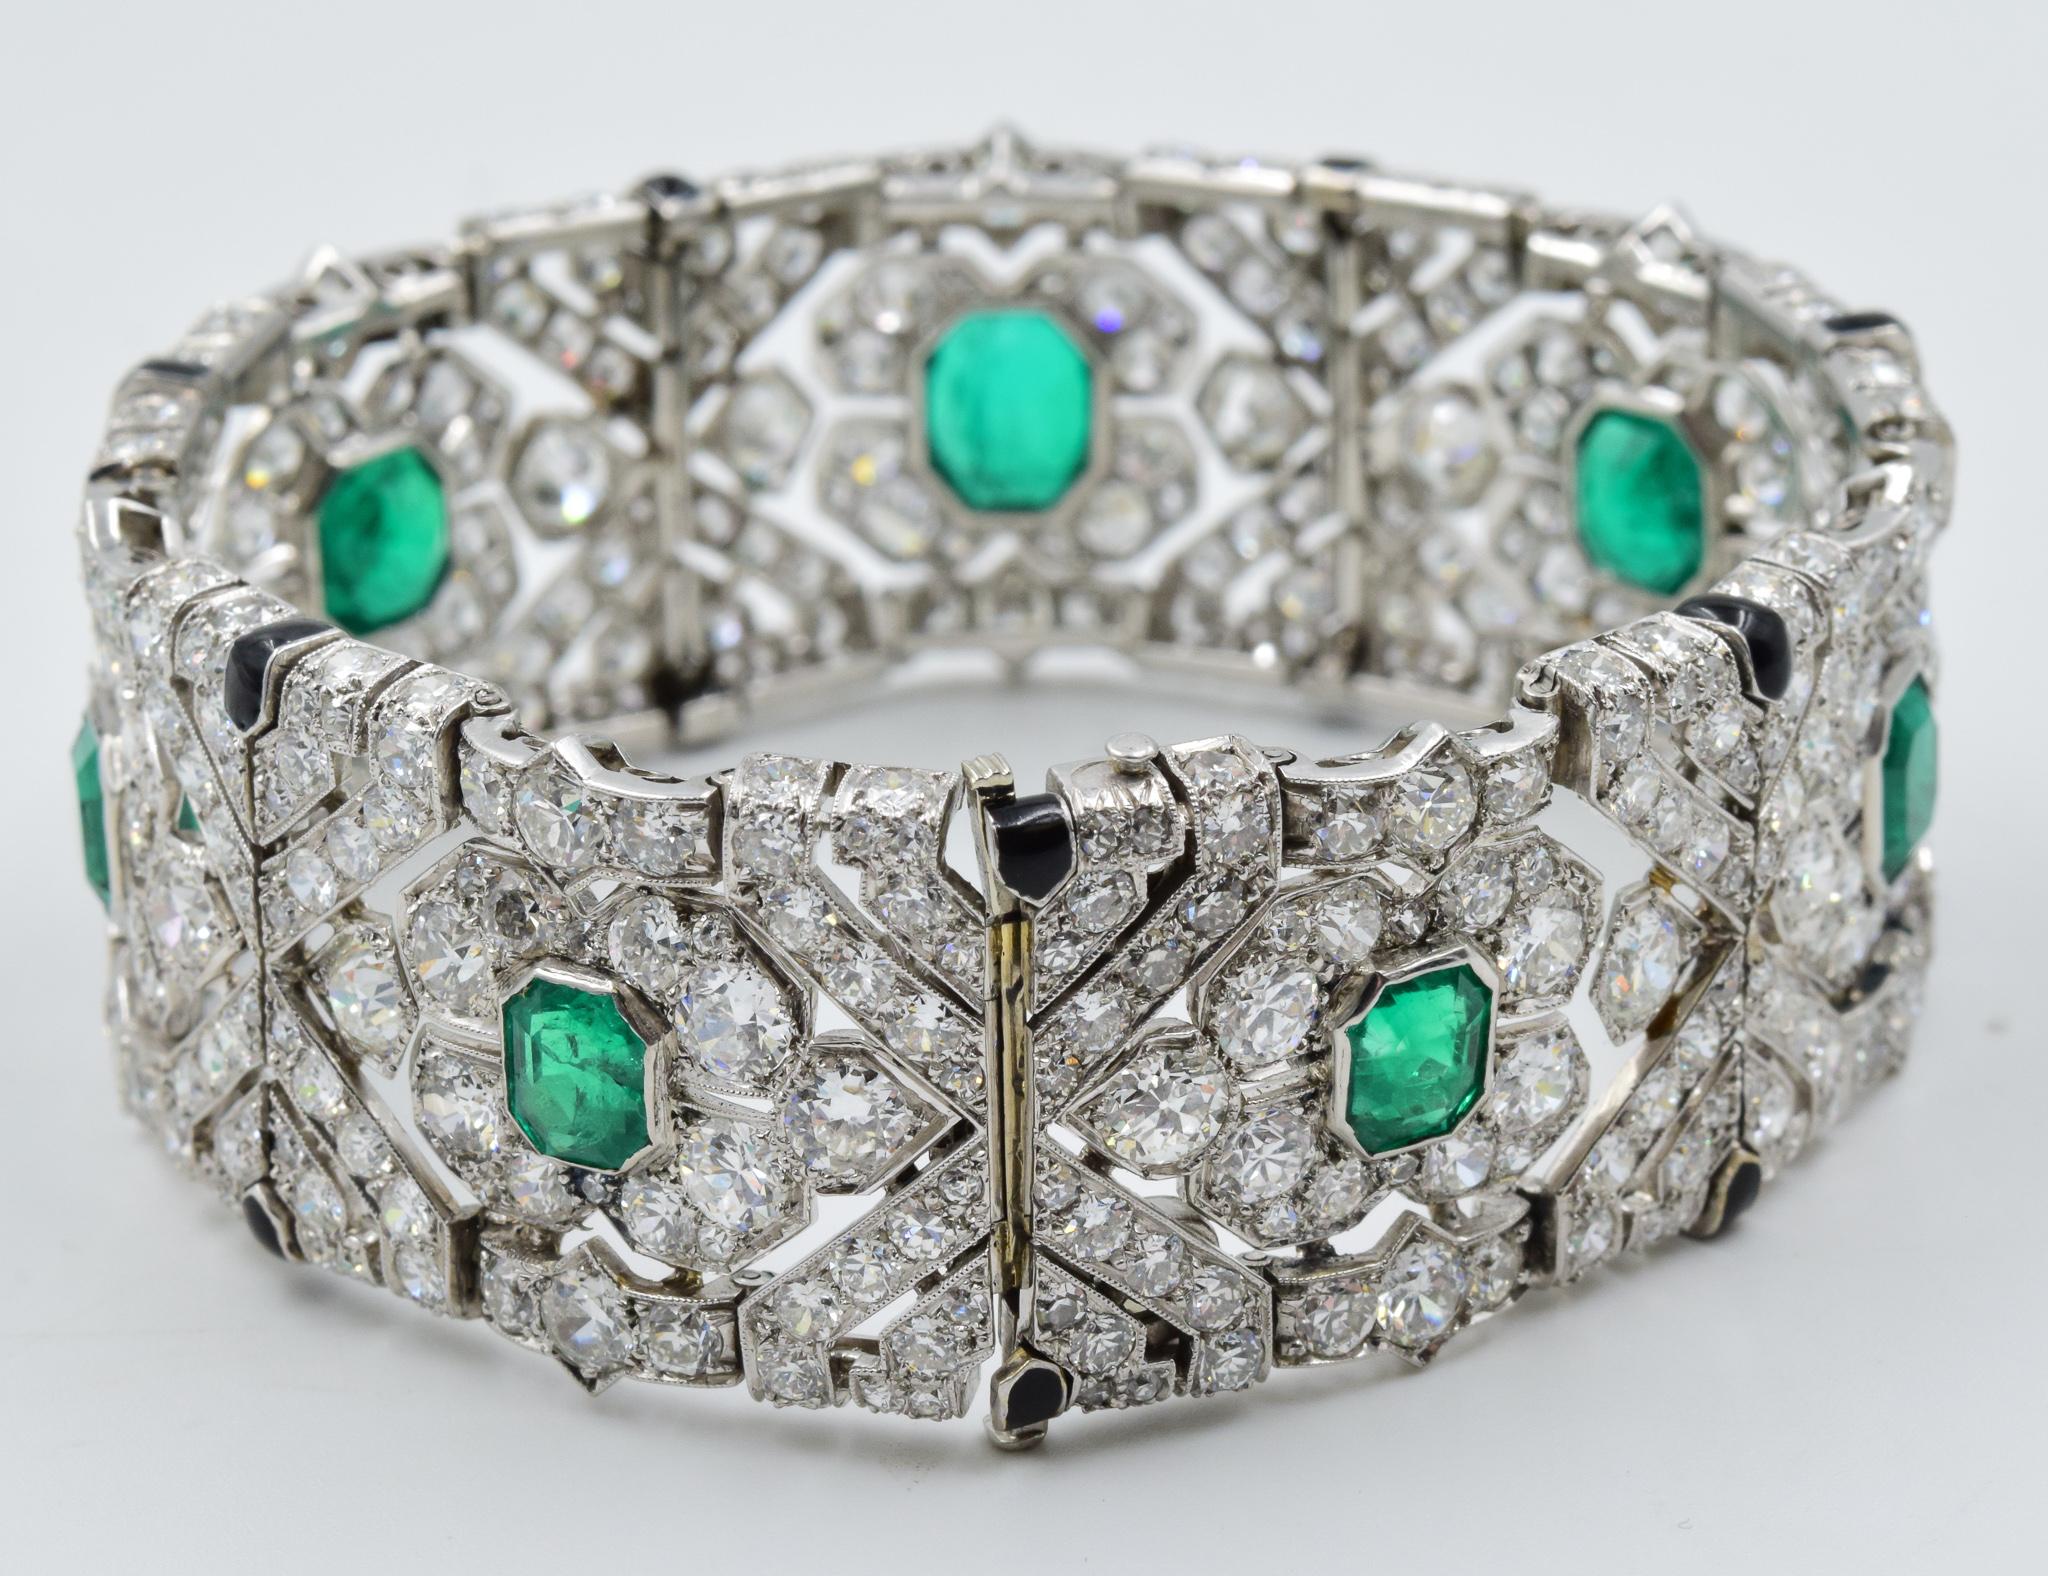 10 Carat Colombian Emerald Bracelet in Platinum AGL Certified 20 Carat 1920s Era 3